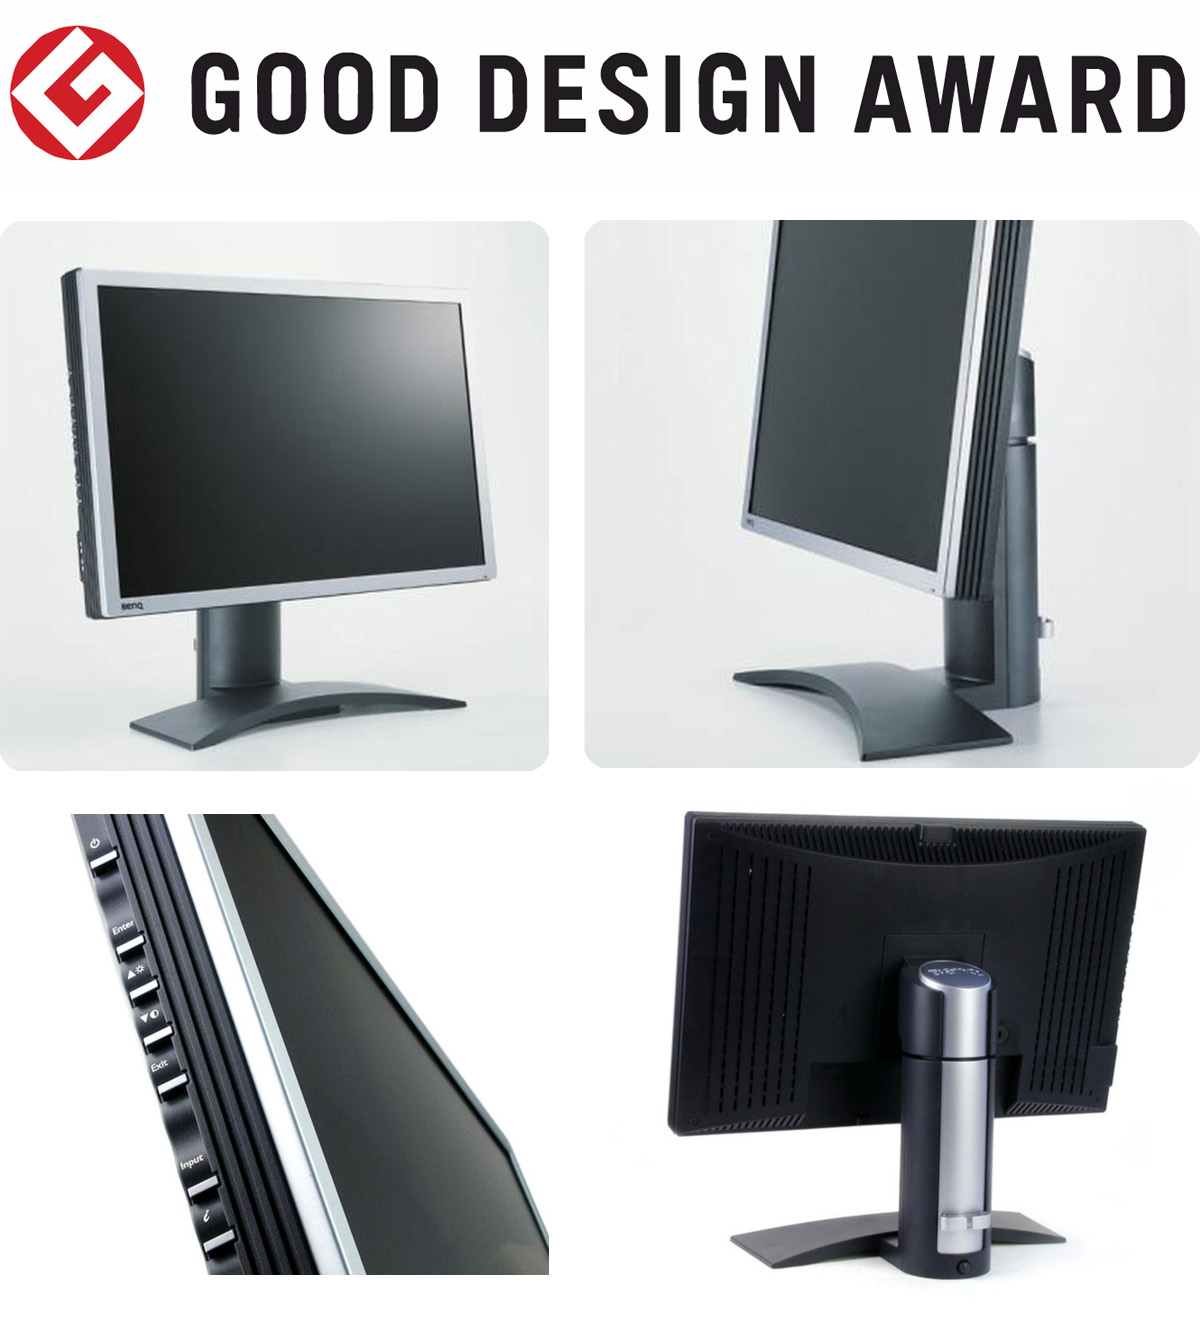 【日本】明基BenQ液晶显示器FP231W获颁2004年度G-Mark设计大奖（GOOD DESIGN AWARD 2004）